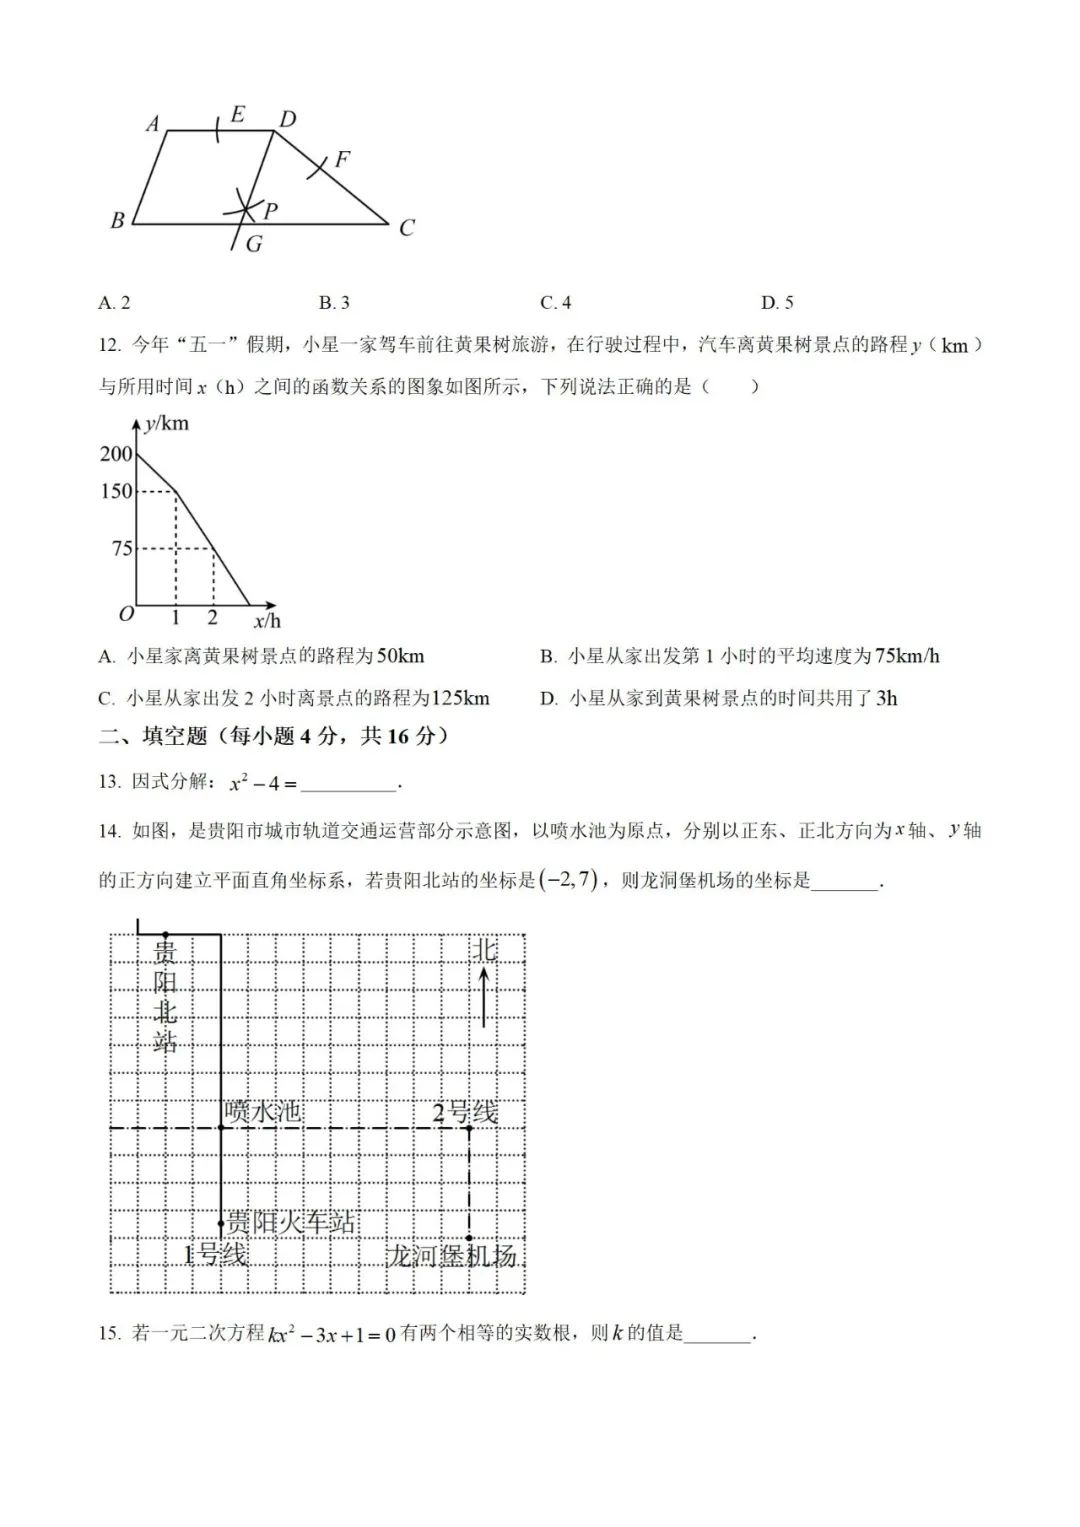 【中考真题】2023年贵州省中考数学真题 (带答案解析) 第3张